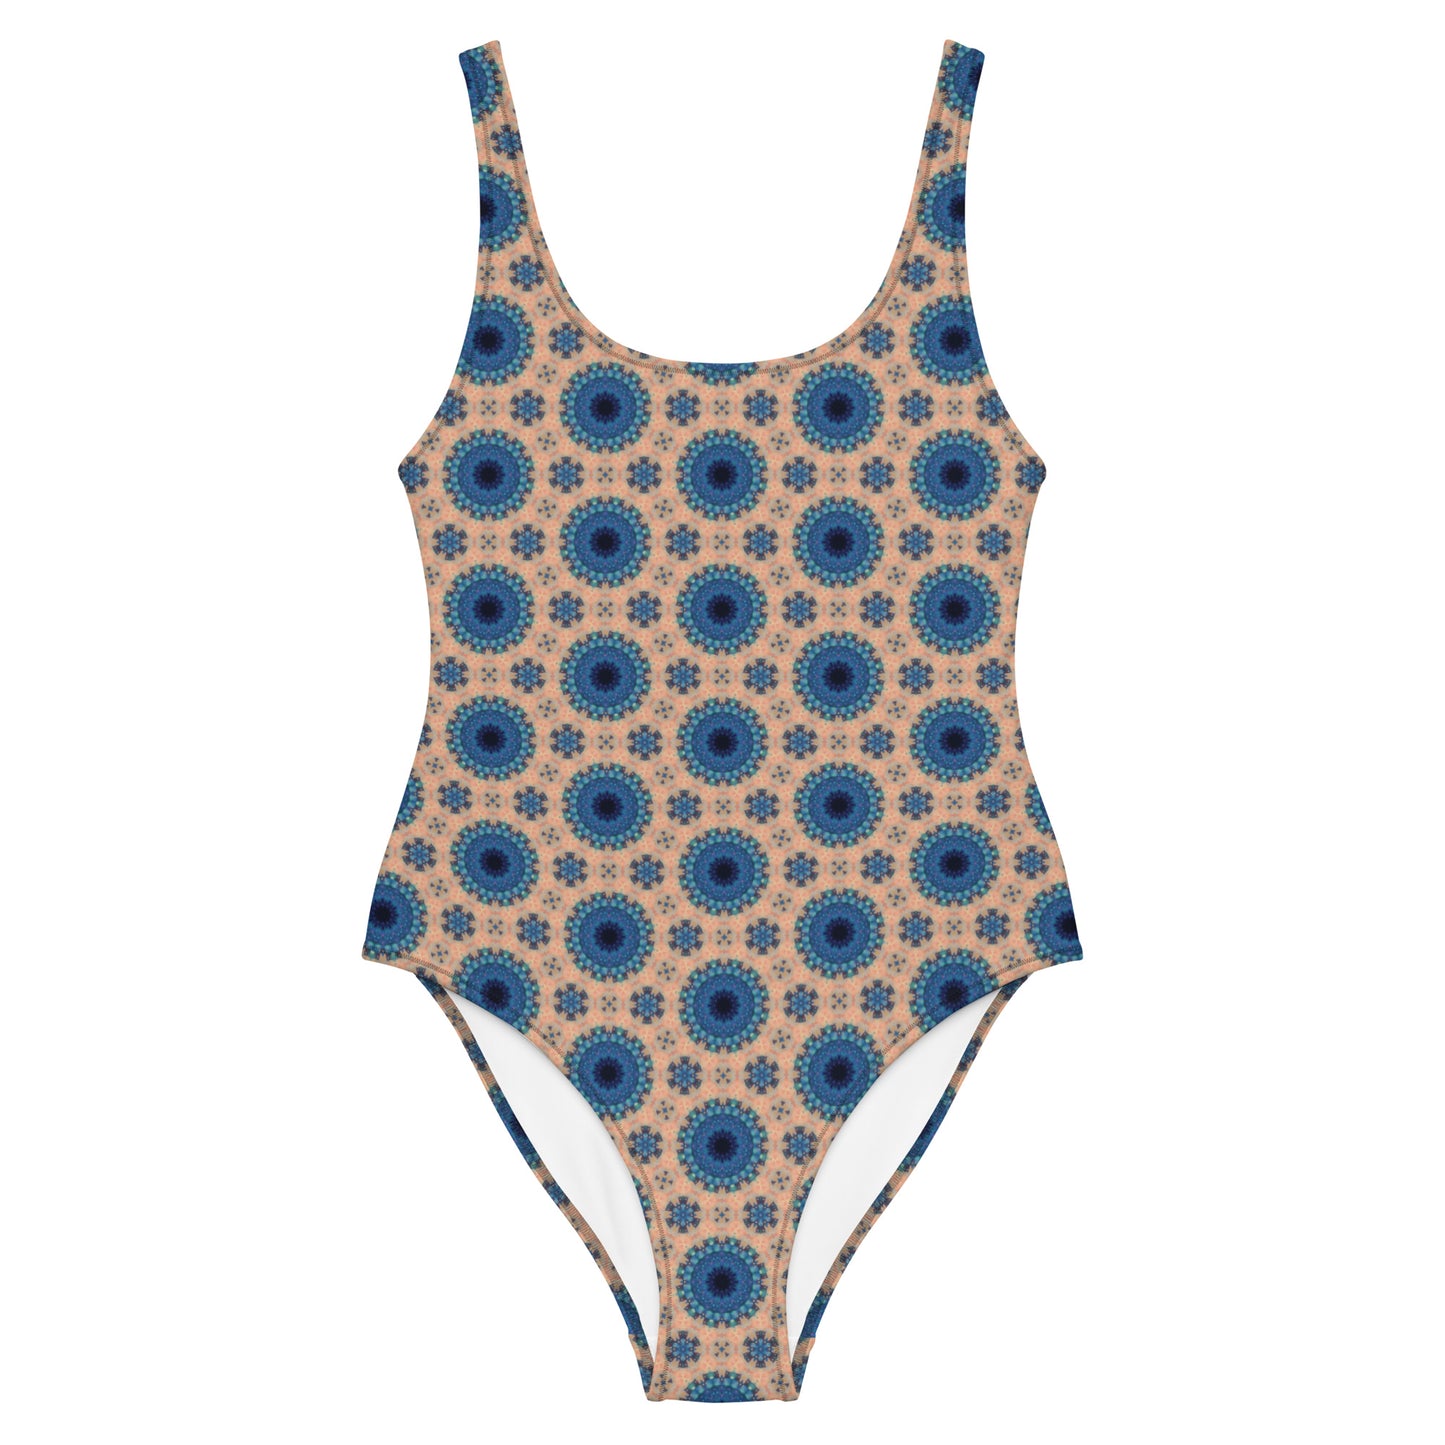 Florahex One-Piece Swimsuit